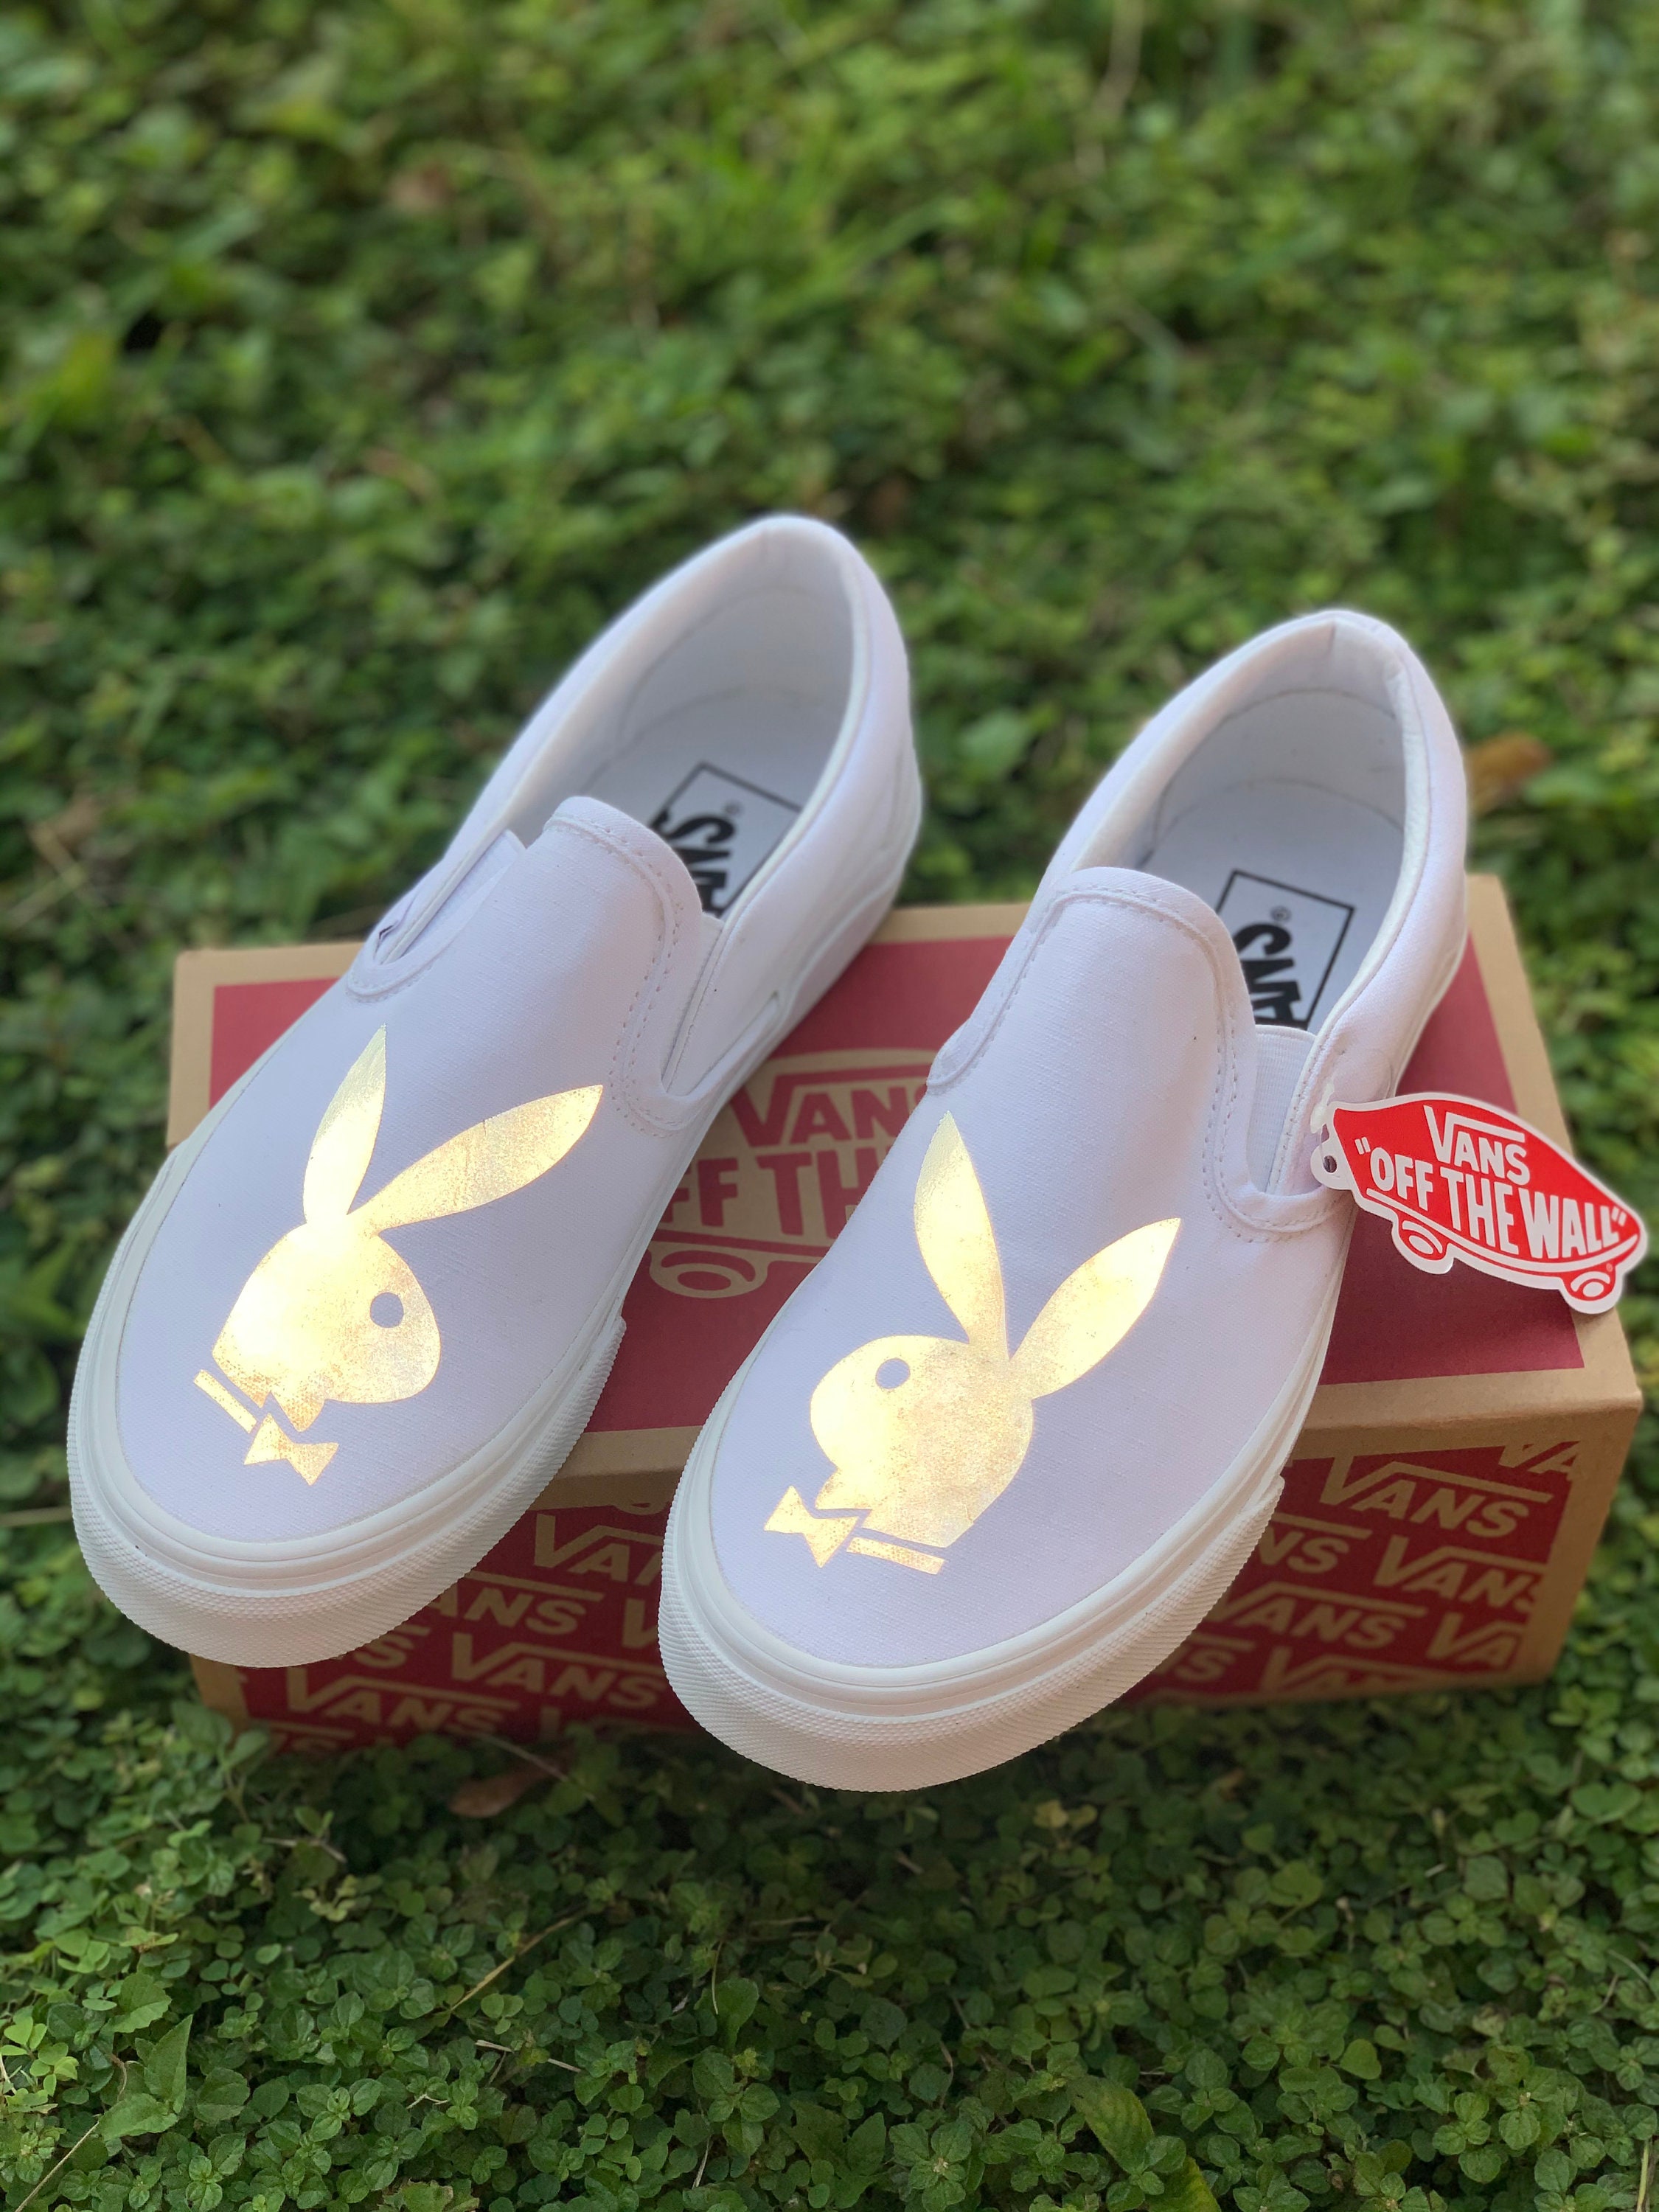 Reflective Playboy Bunny Customs – scxrlettbkicks